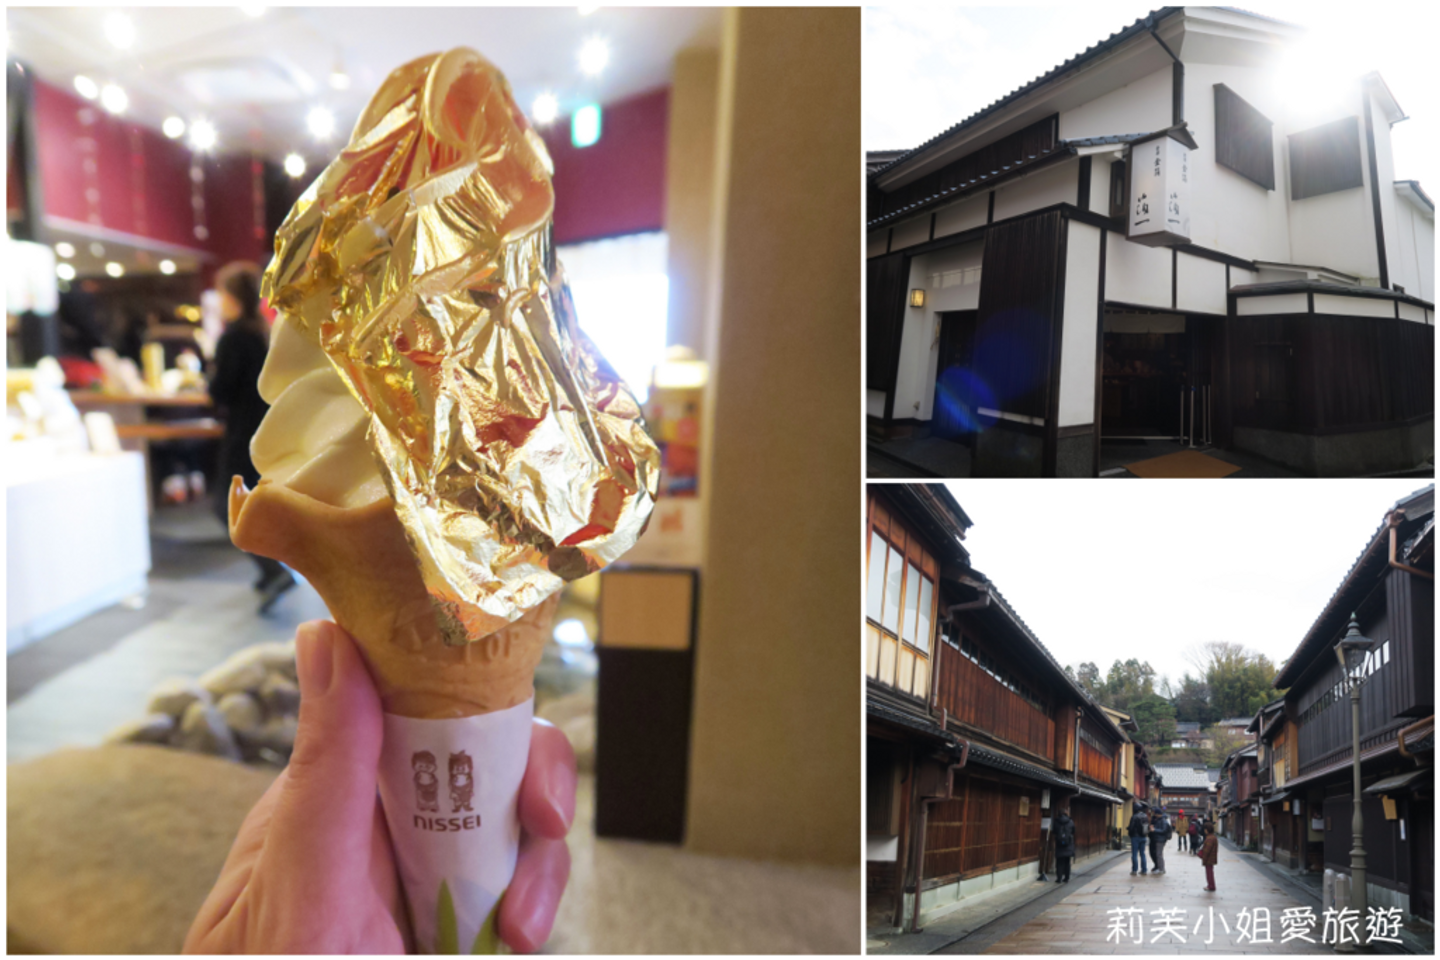 金澤東茶屋街閃亮亮的箔一金箔冰淇淋| 日本| 名古屋・中部・北陸| 旅行酒吧